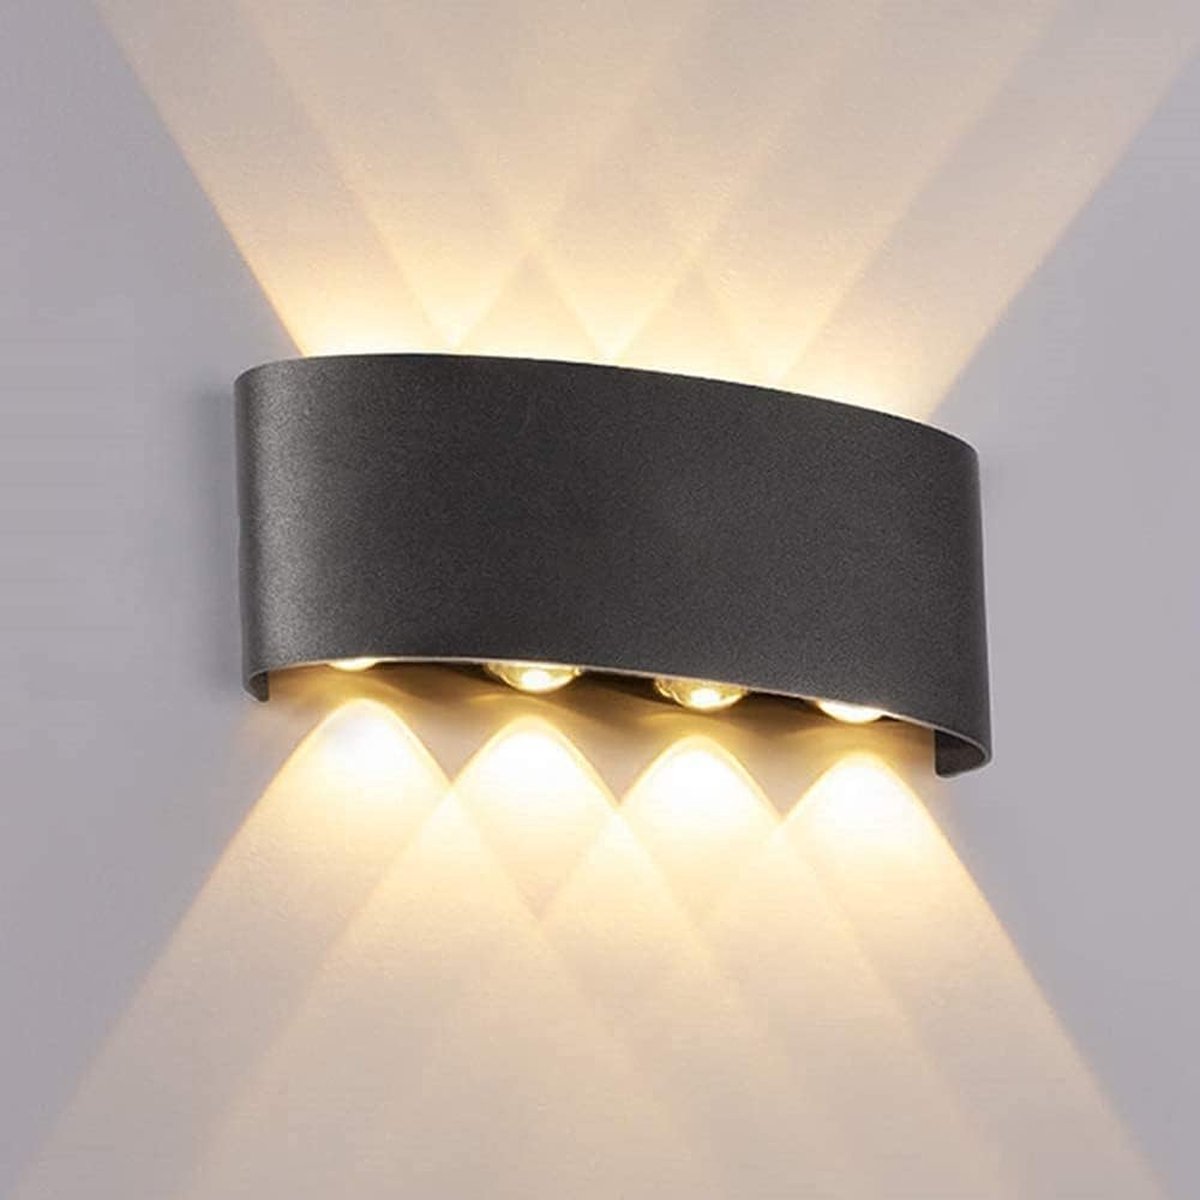 Wandlampen Voor buiten en binnen - led verlichting - Aluminium - 3000k - 10000 Lumen - IP65 waterdicht - wandlamp badkamer - wandlamp slaapkamer - wandlamp woonkamer - Tuin wandlamp - Zwart